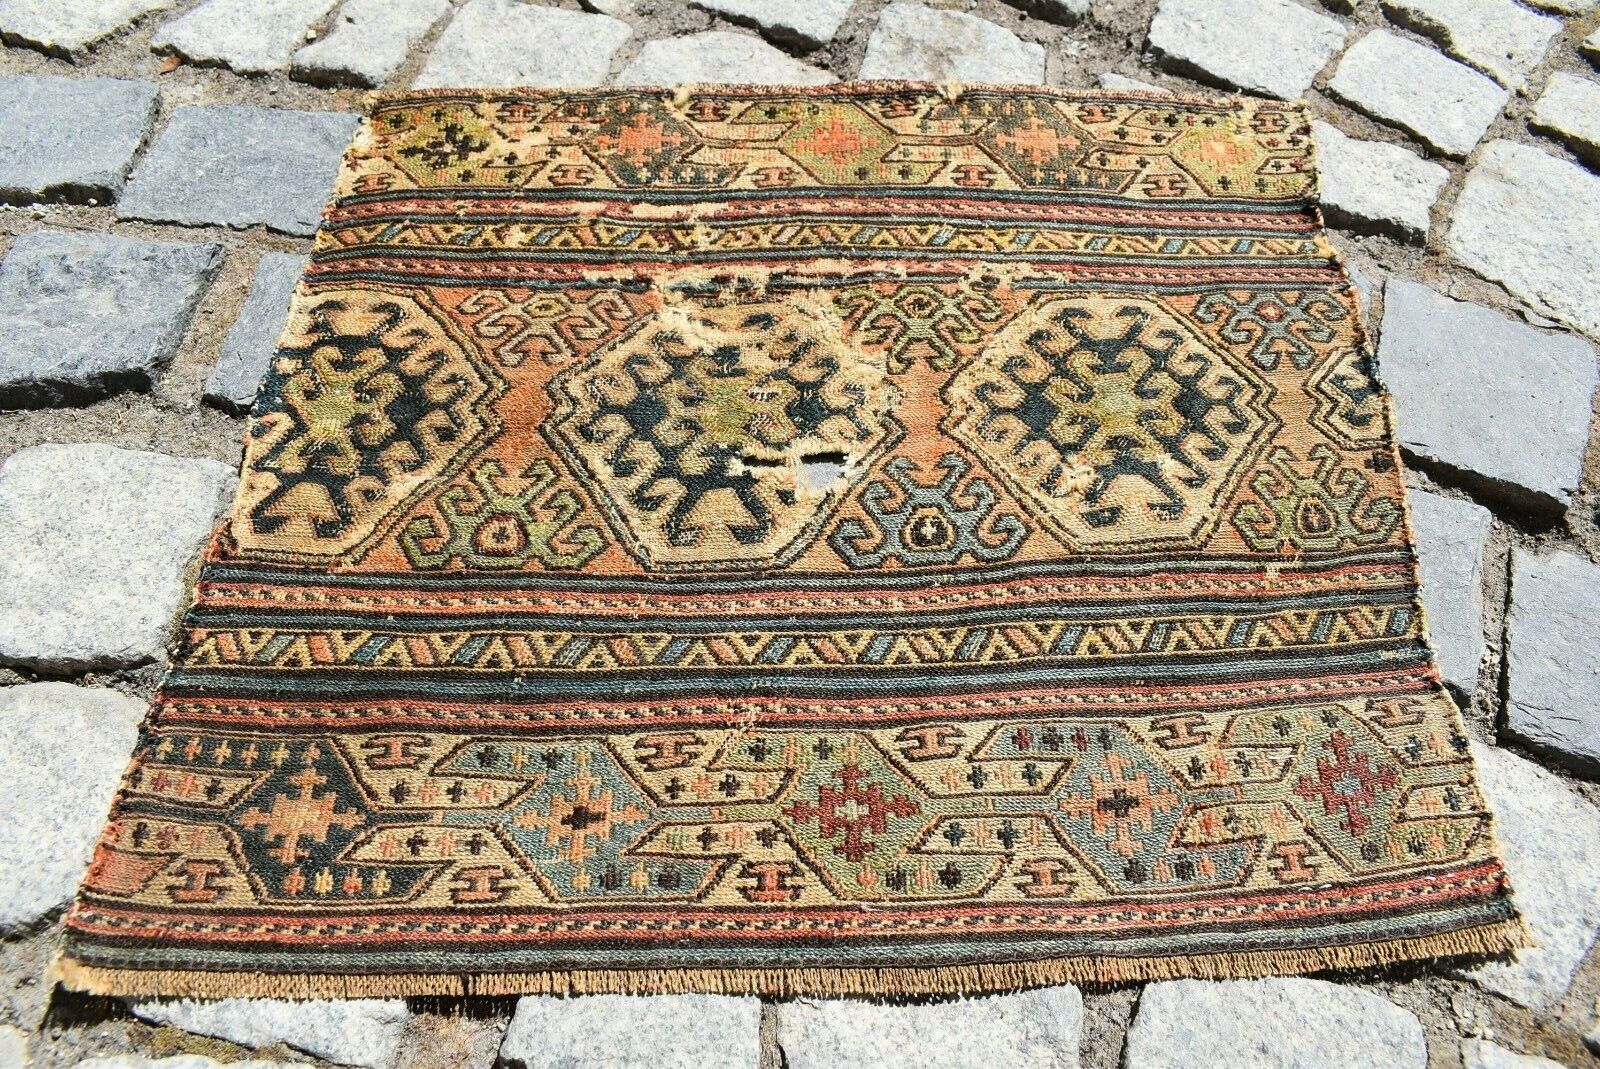 Marvelous Antique Caucasian Collector's Item Shahsavan Mafrash Panel Sumac Kilim